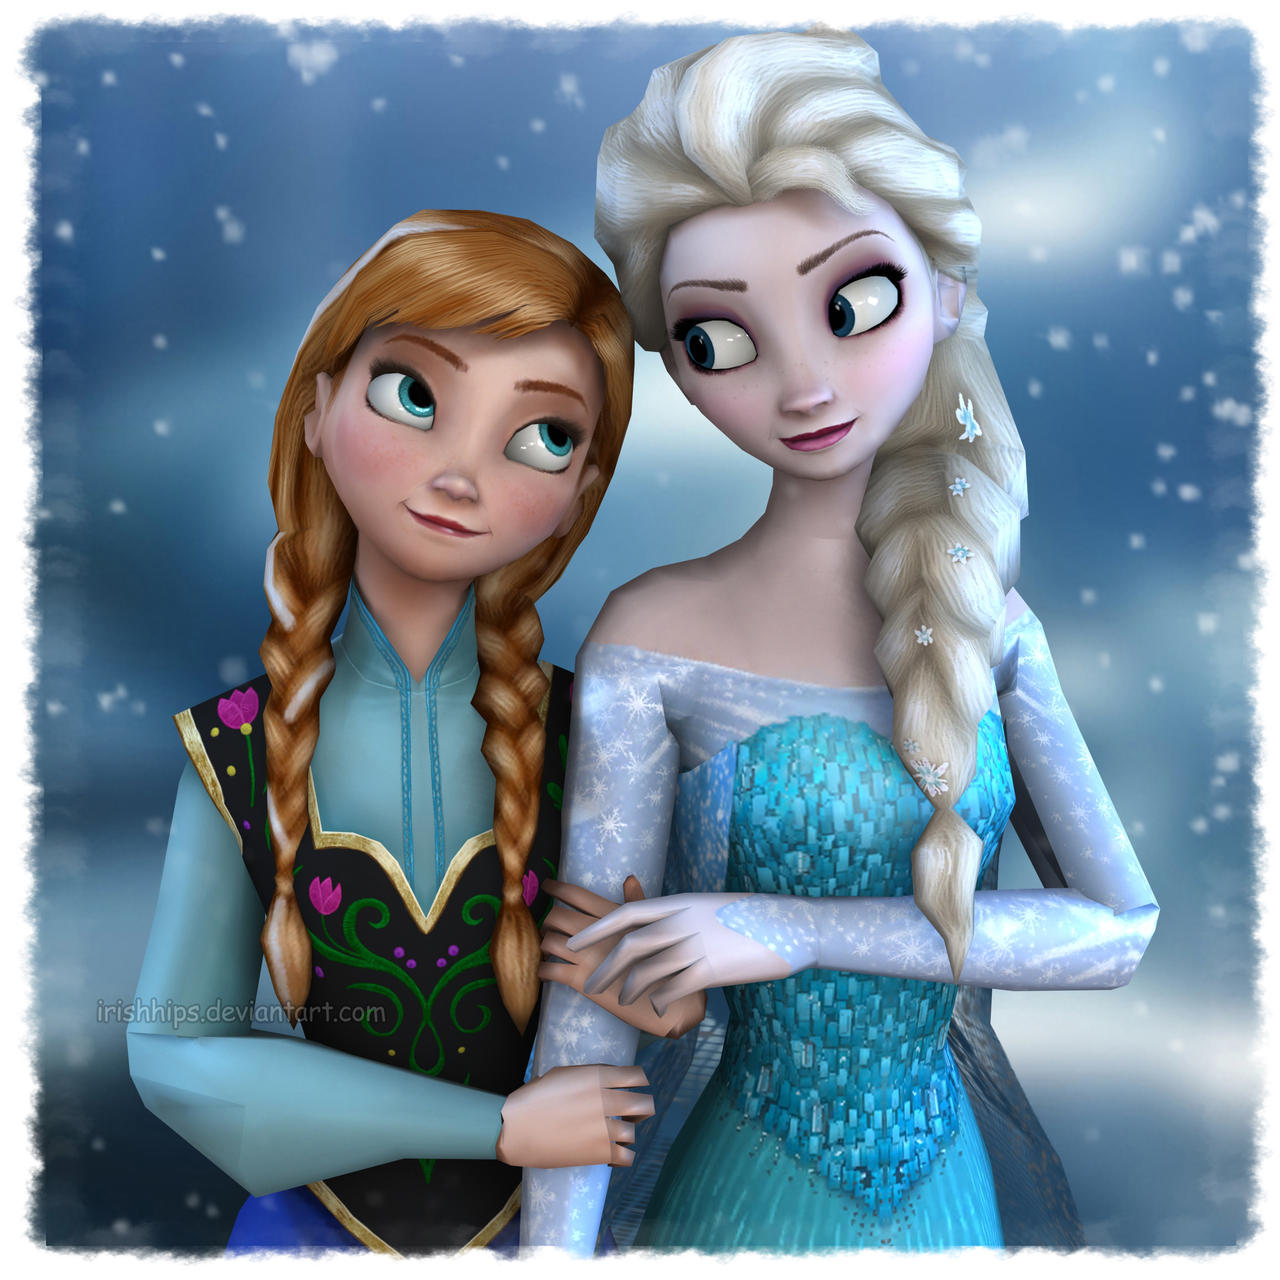 Disney's Frozen: Sisters Love by Irishhips on DeviantArt